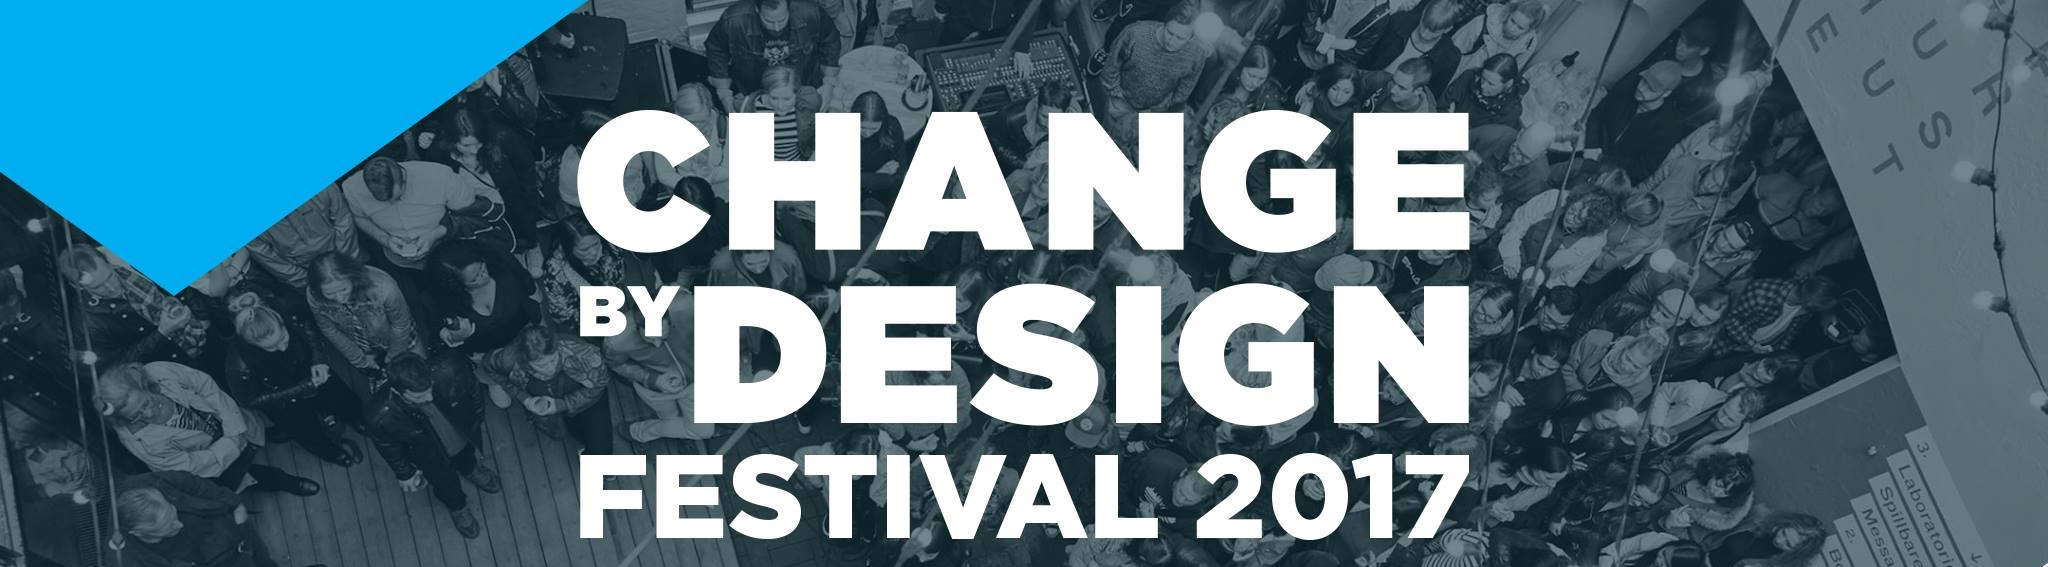 Forsidebilde - Change by Design 2017 - Nye koblinger